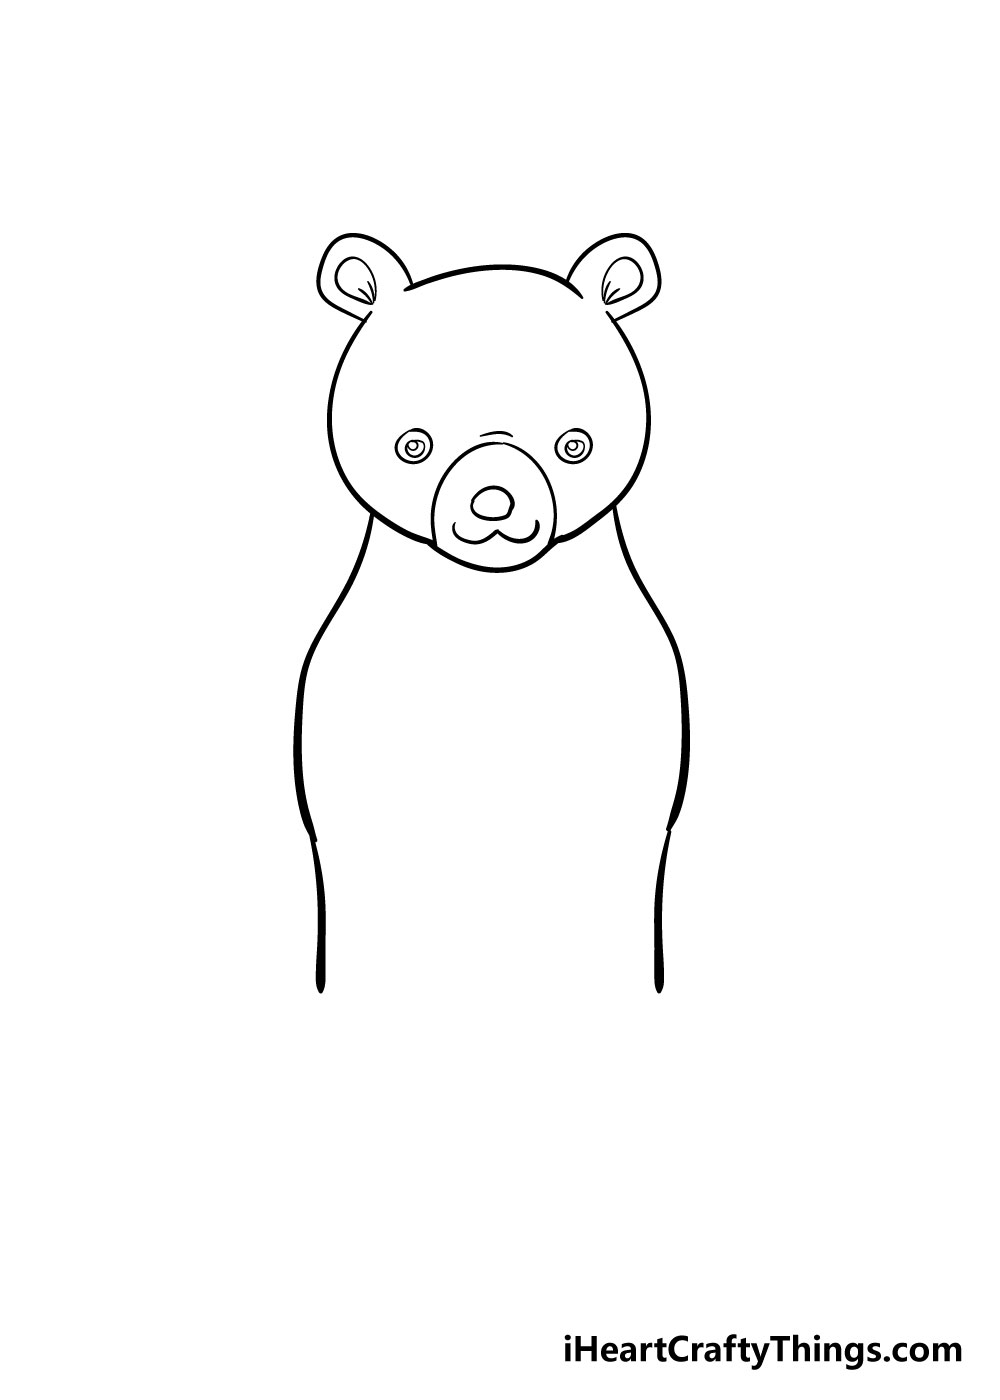 How to draw bear 4 - Cách vẽ con gấu dễ thương đơn giản với 8 bước